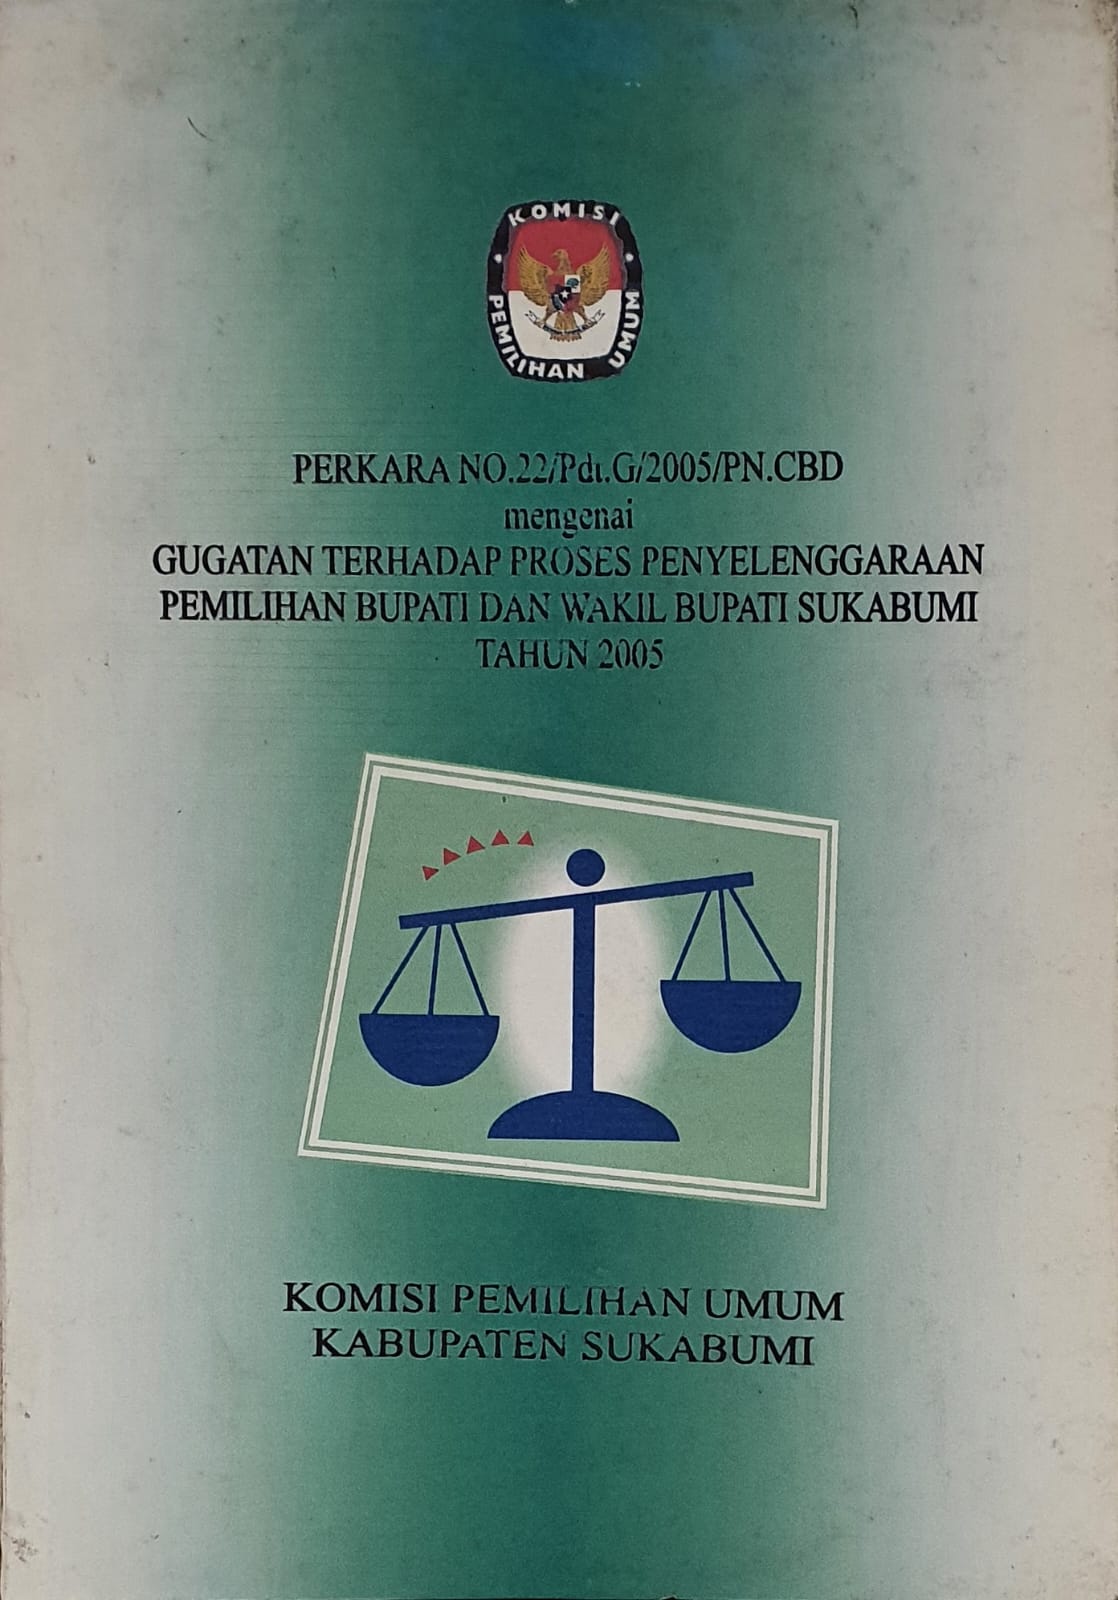 Perkara No. 22/Pdt.G/2005/PN.CBD mengenai Gugatan Terhadap Proses Penyelenggaraan Pemilihan Bupati dan Wakil Bupati Sukabumi Tahun 2005 